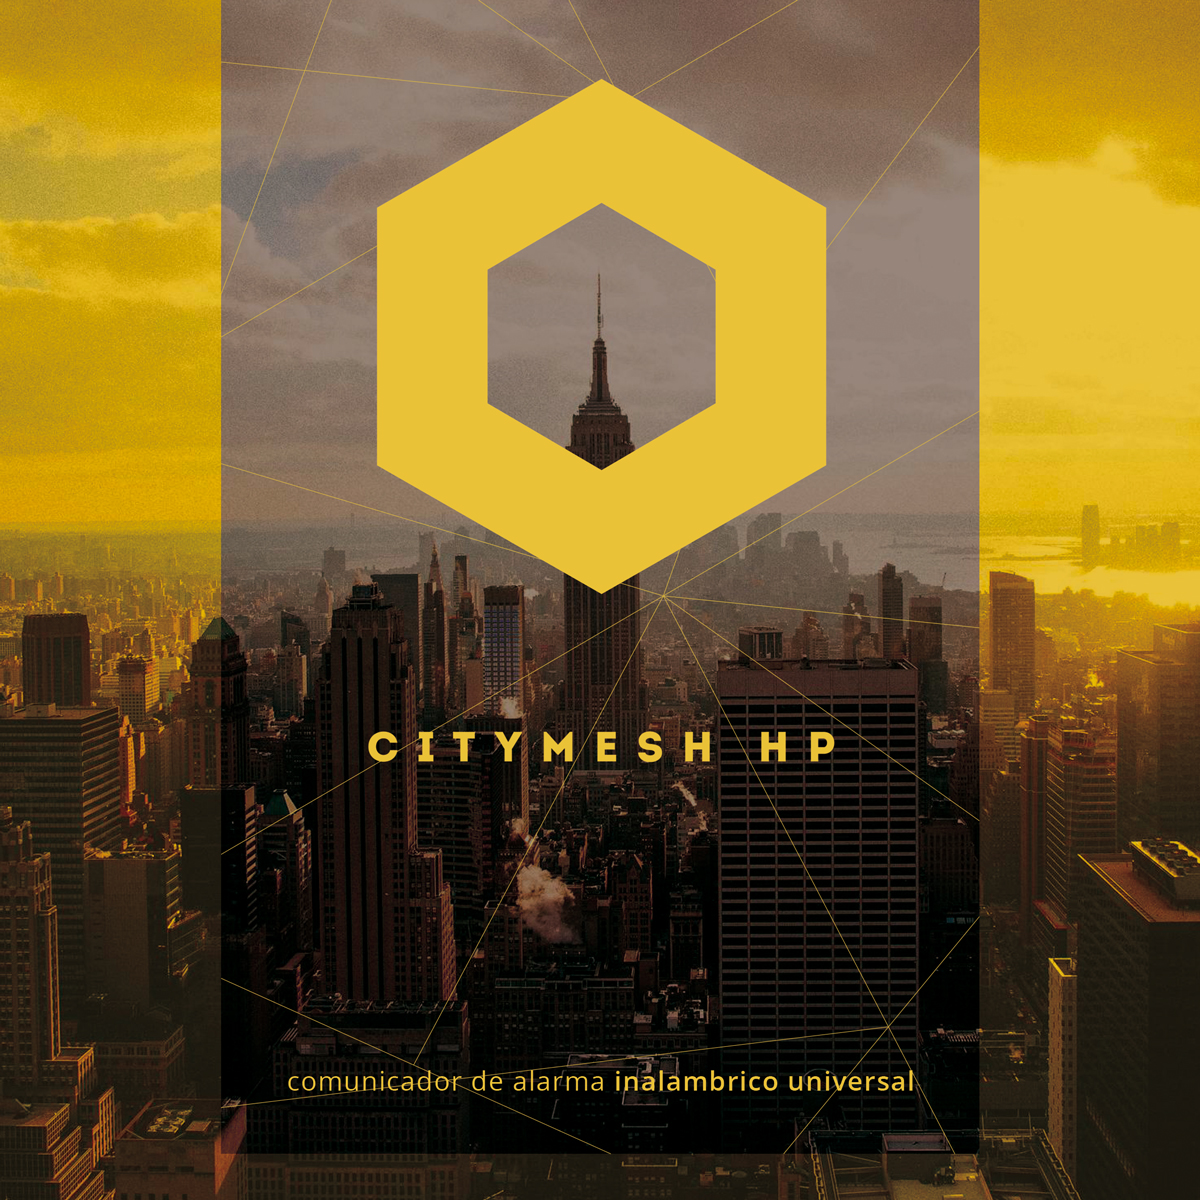 Producción audiovisual para DEITRES CityMesh HP by UMM ideas SA